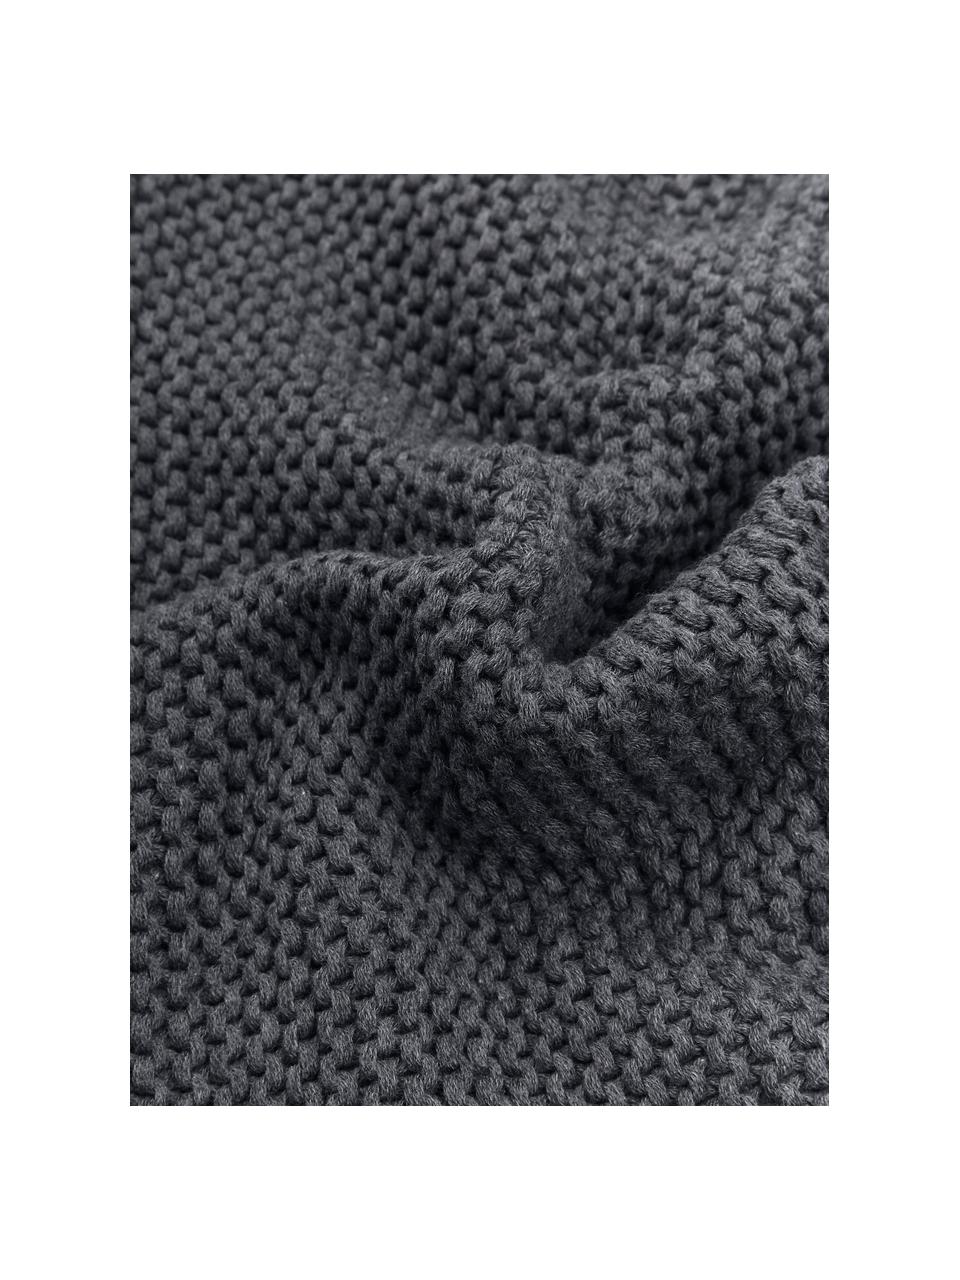 Coperta a maglia in cotone organico grigio scuro Adalyn, 100% cotone organico, certificato GOTS, Grigio scuro, Larg. 150 x Lung. 200 cm